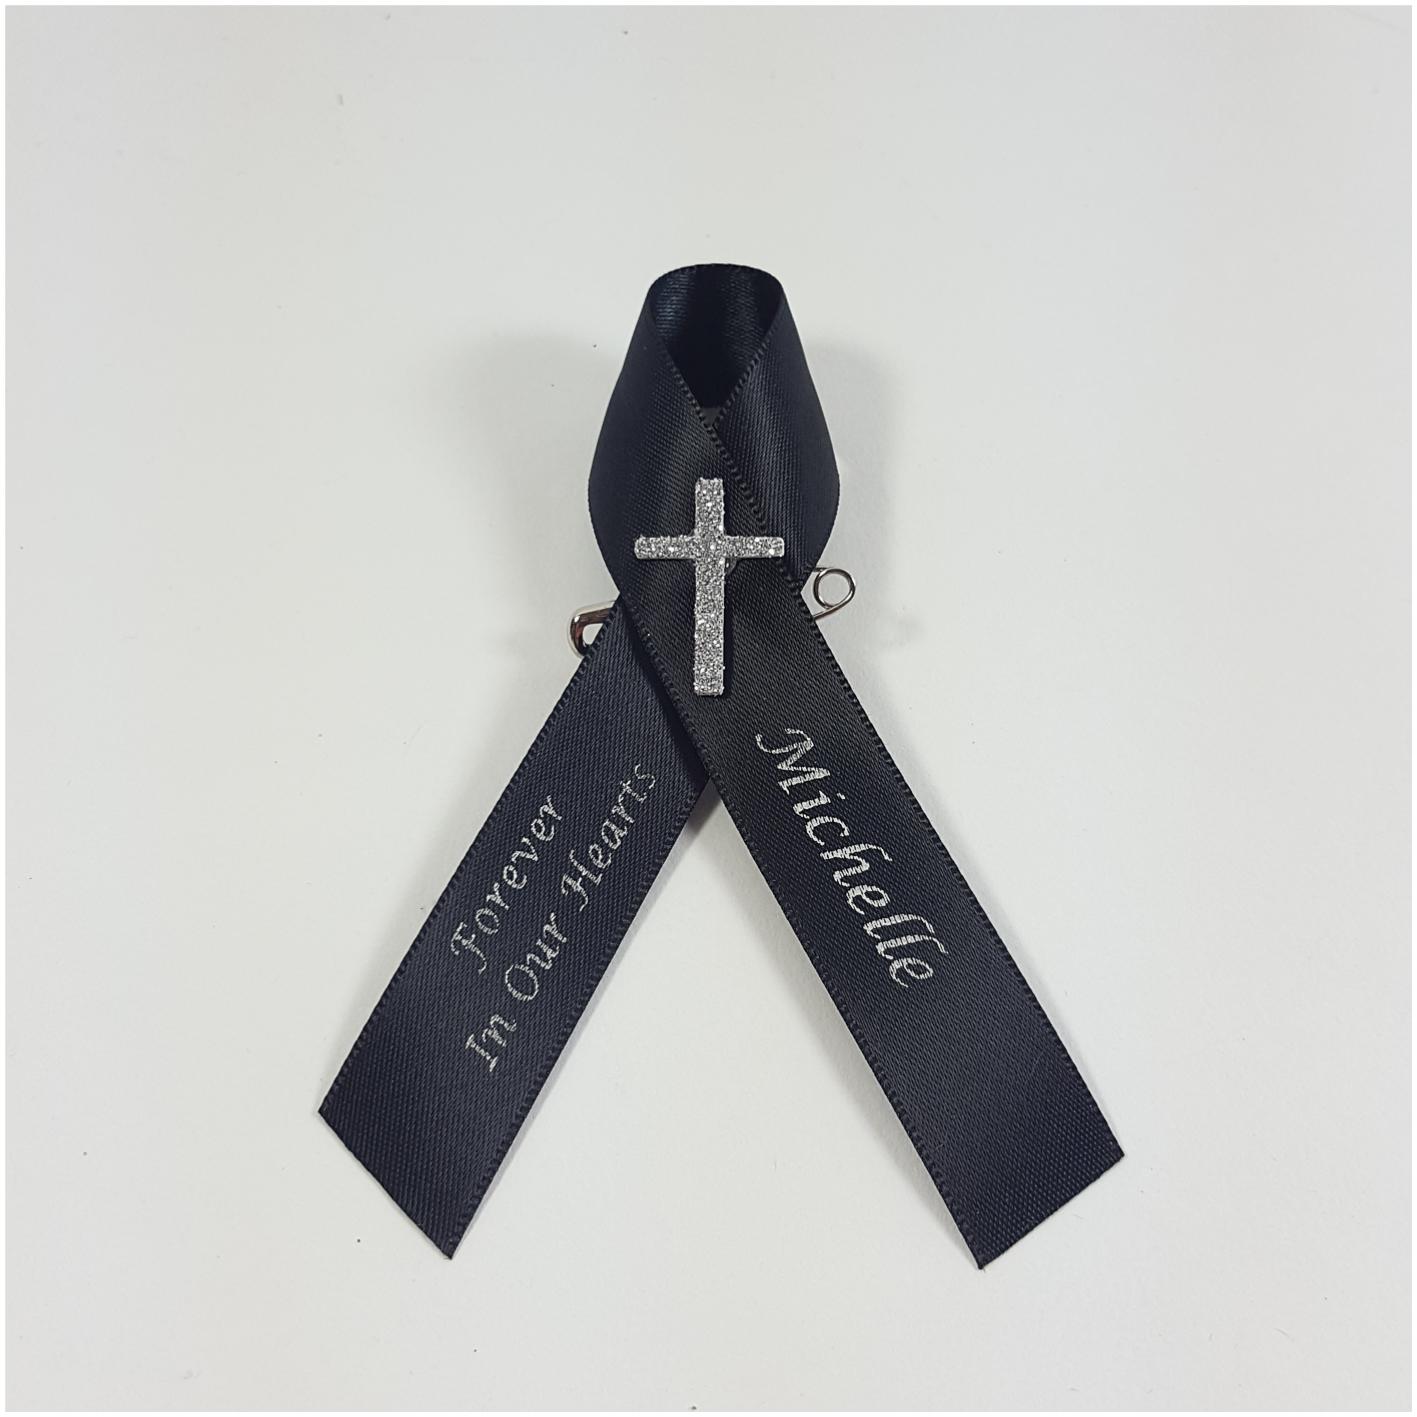 Black memorial ribbon with cross